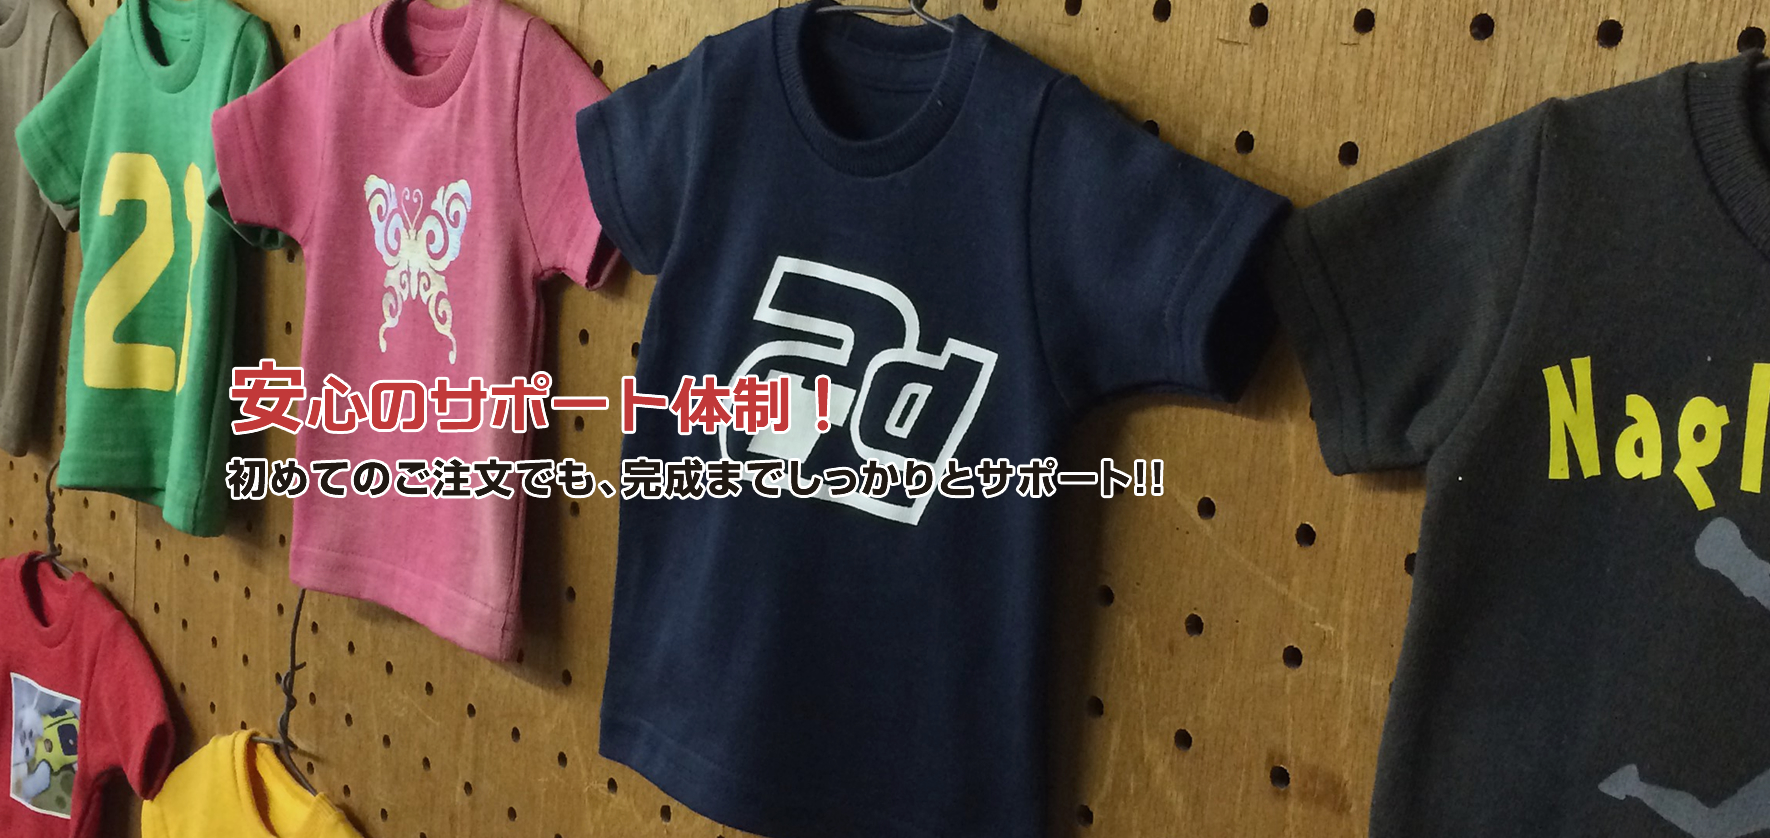 オリジナルプリントTシャツのことなら、大阪のアド・プリントワークス